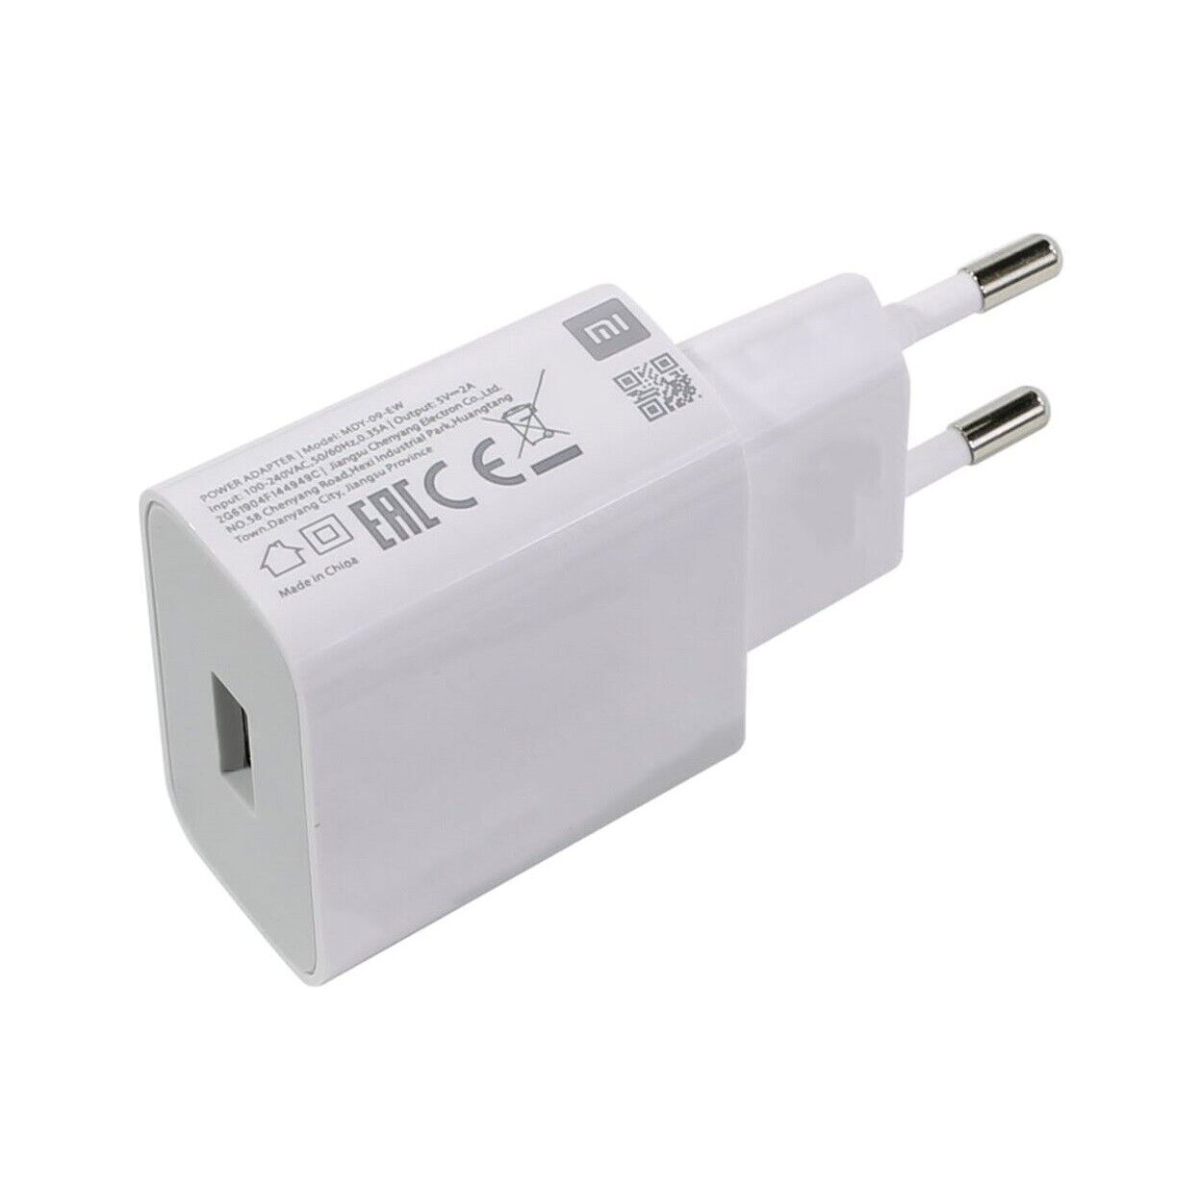 XIAOMI Original Ladegerät Volt, Adapter Universal, Stecker Netzteil TYP-C Ladekabel 100-240 Weiß USB XIAOMI Handy-Ladegerät